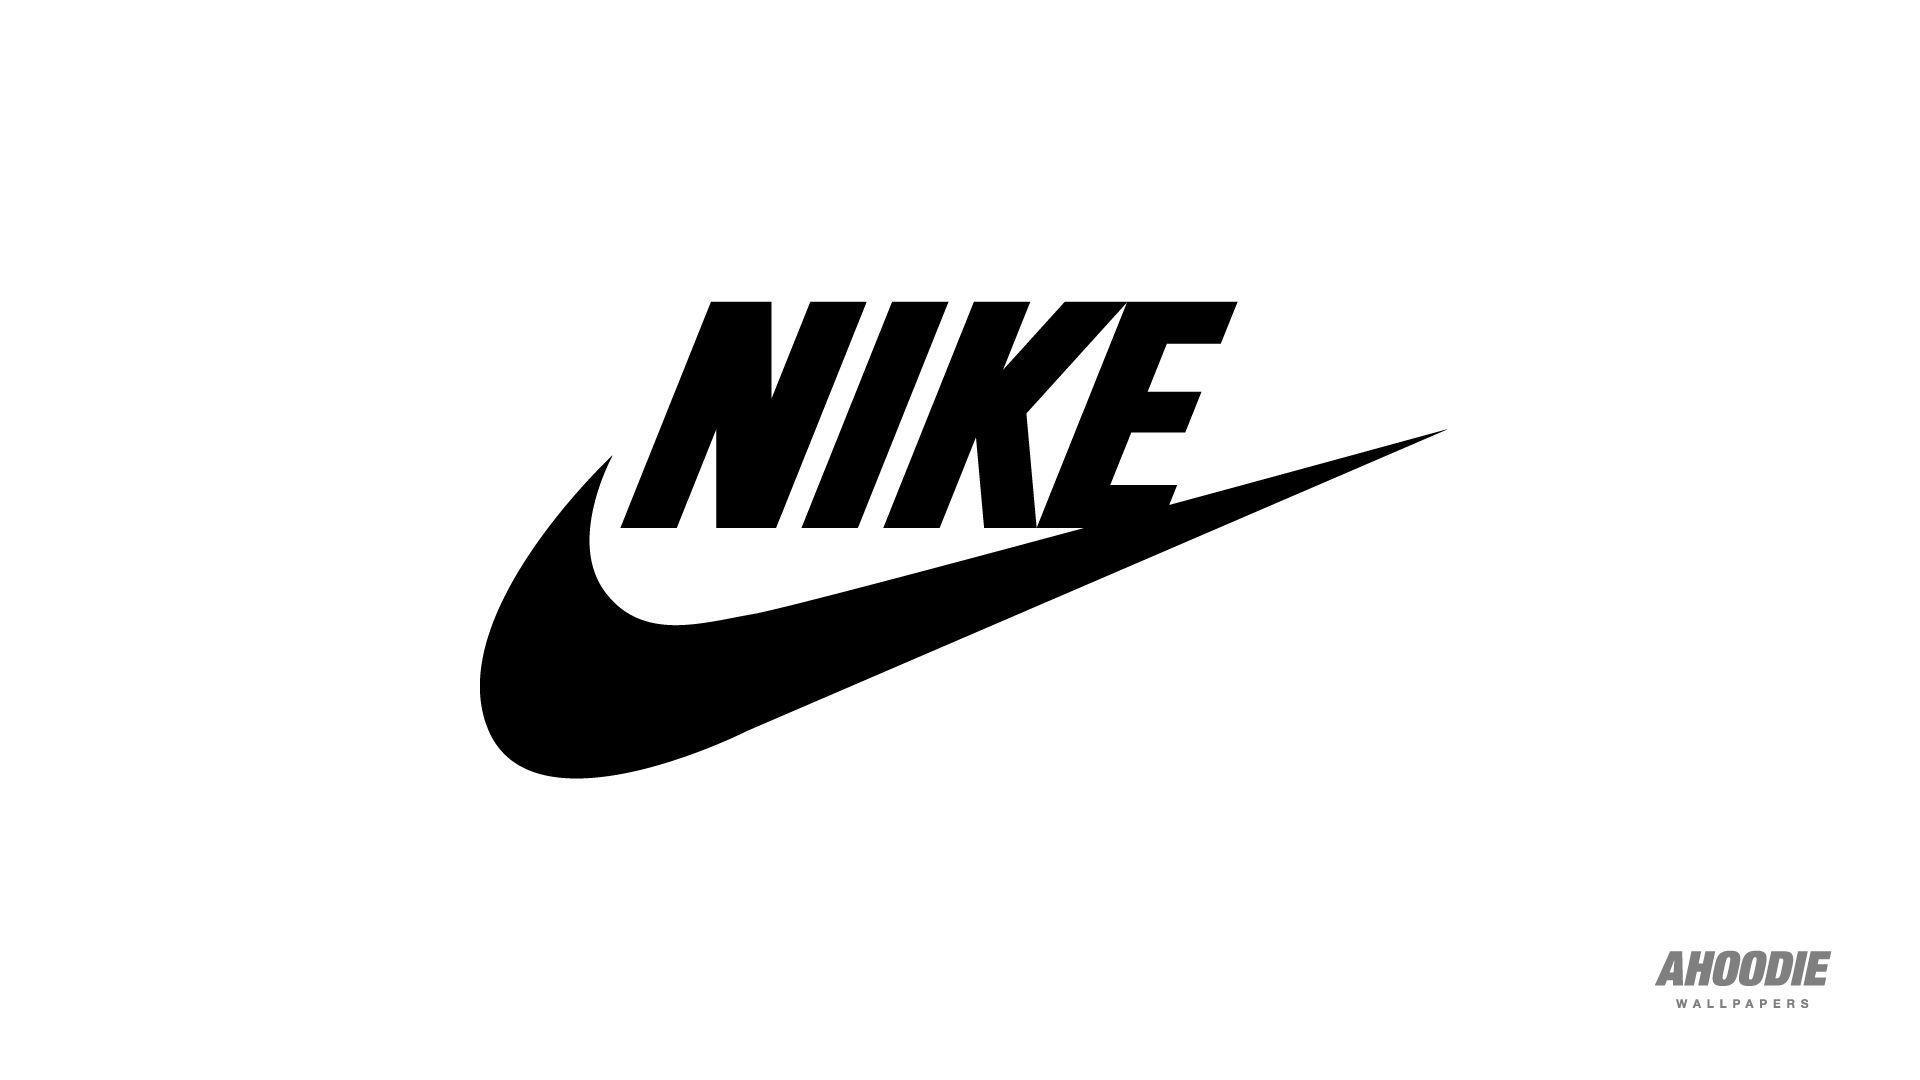 Wallpaper For > Nike Logo Wallpaper Black